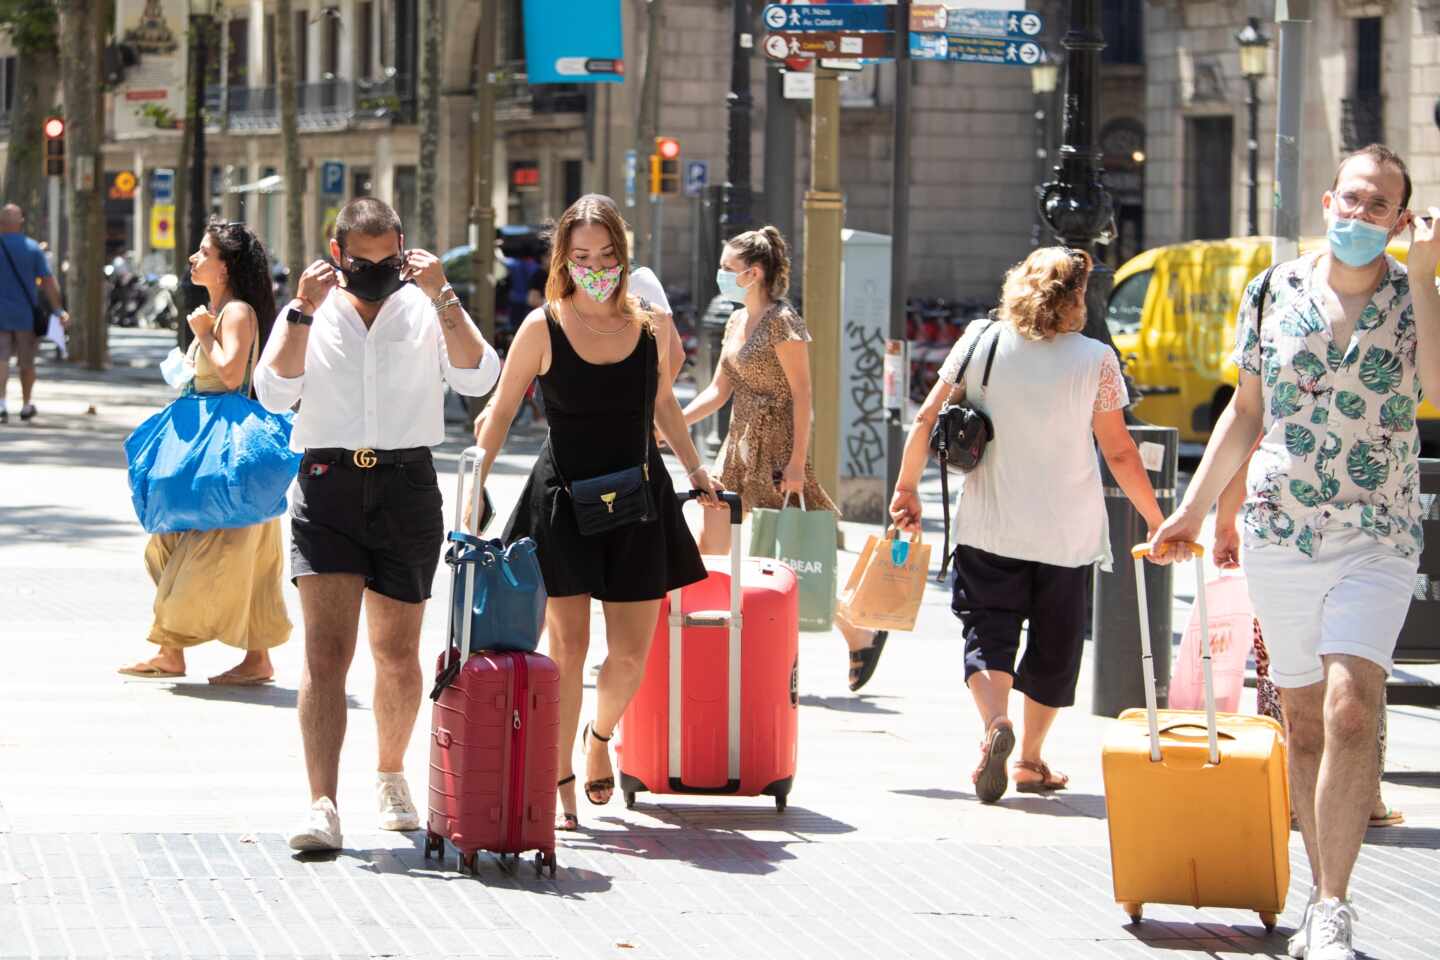 La turismofobia no cala en Cataluña: el 85% defiende los efectos positivos del turismo